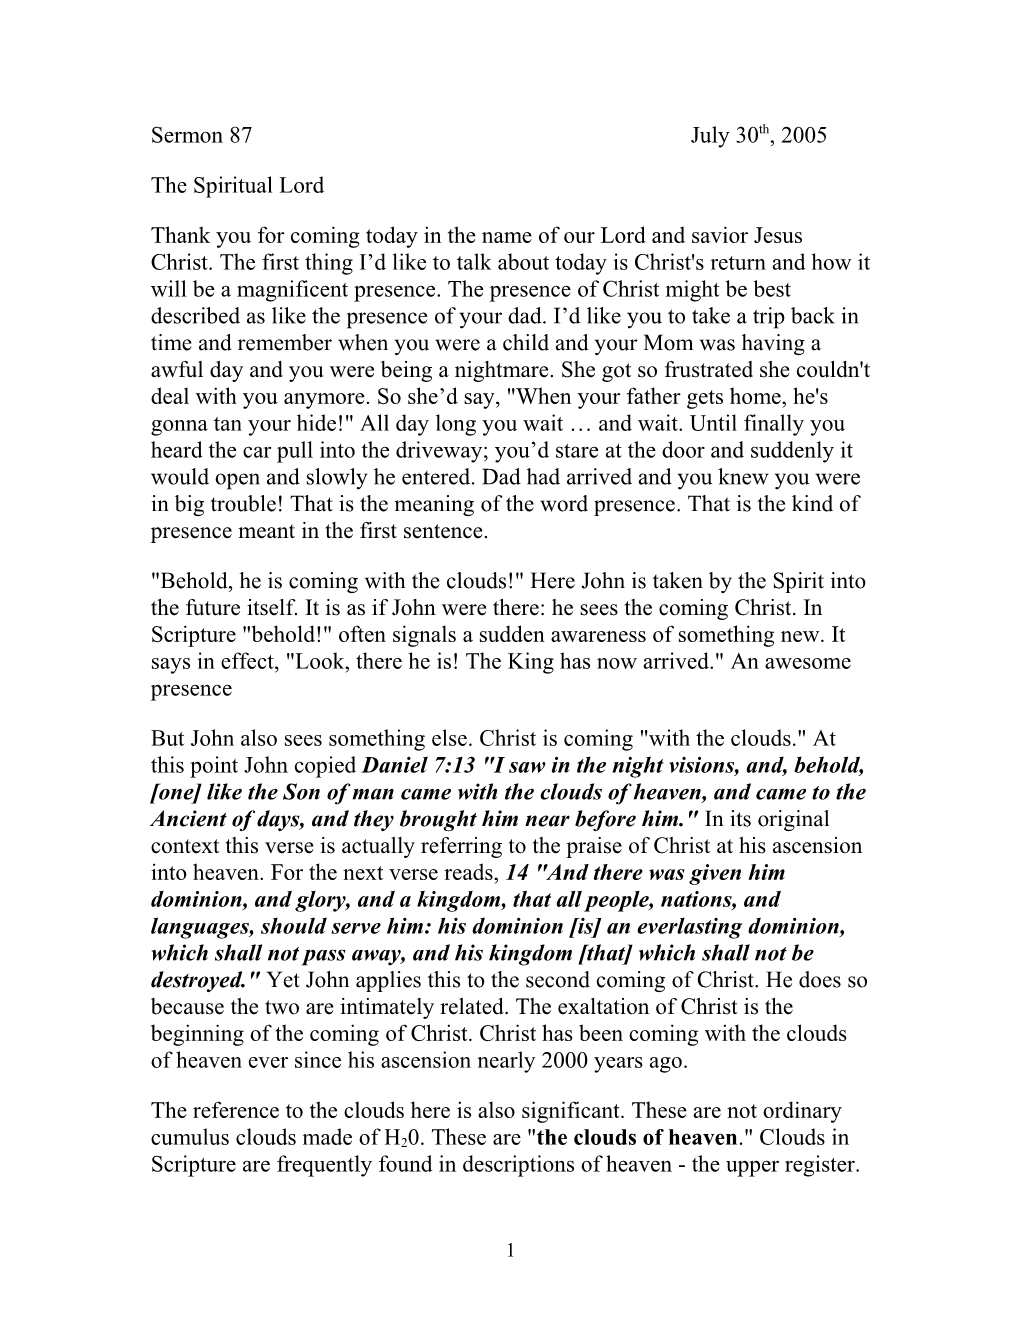 Revelation Sermon 1-7 the Parousia (Greek) of the Spirit-Lord